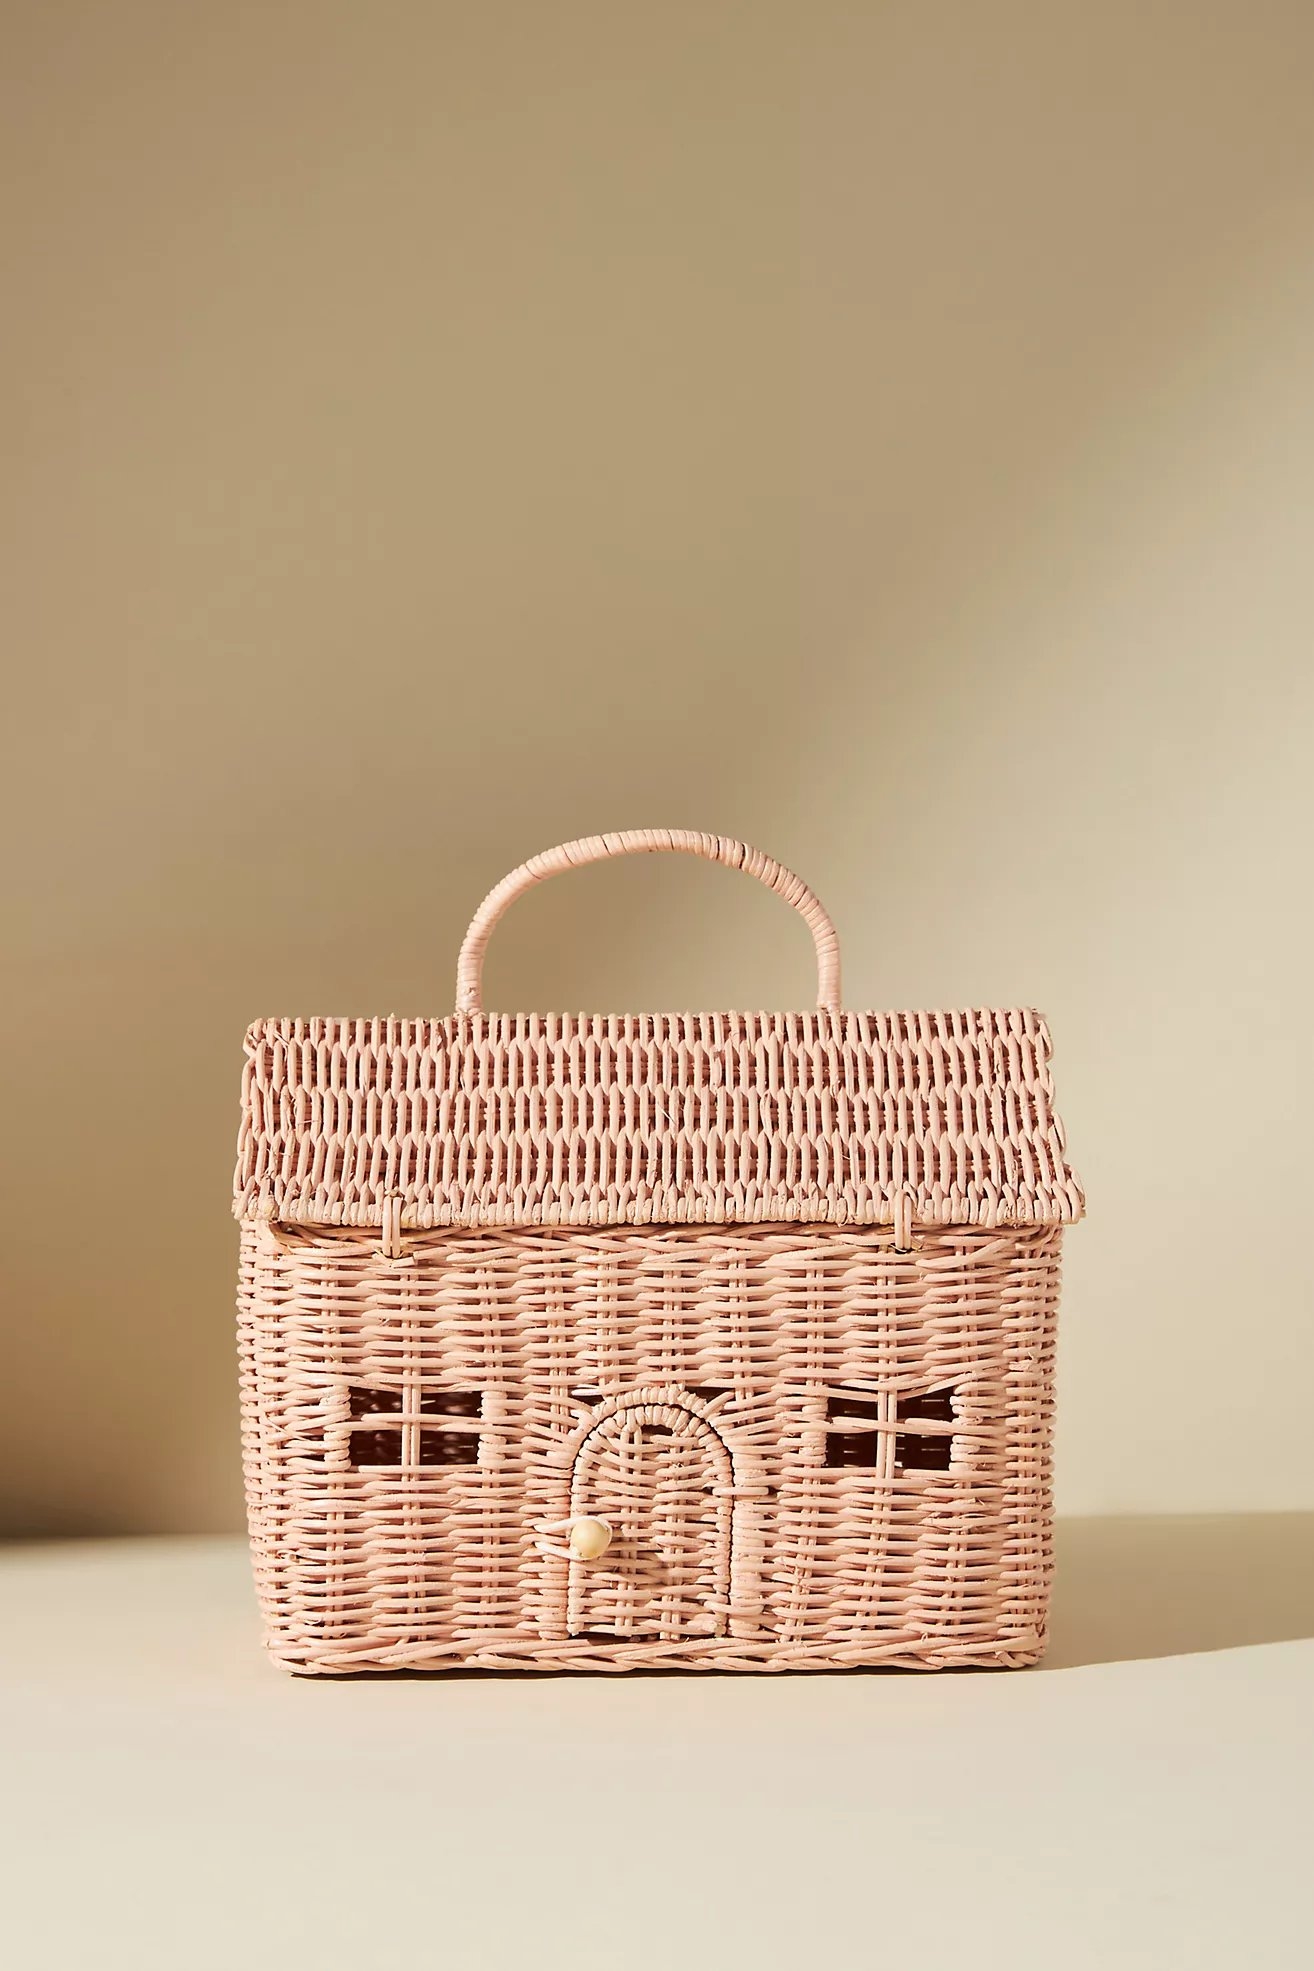 Olli Ella Dollhouse Basket By Olli Ella in Pink - Image 0